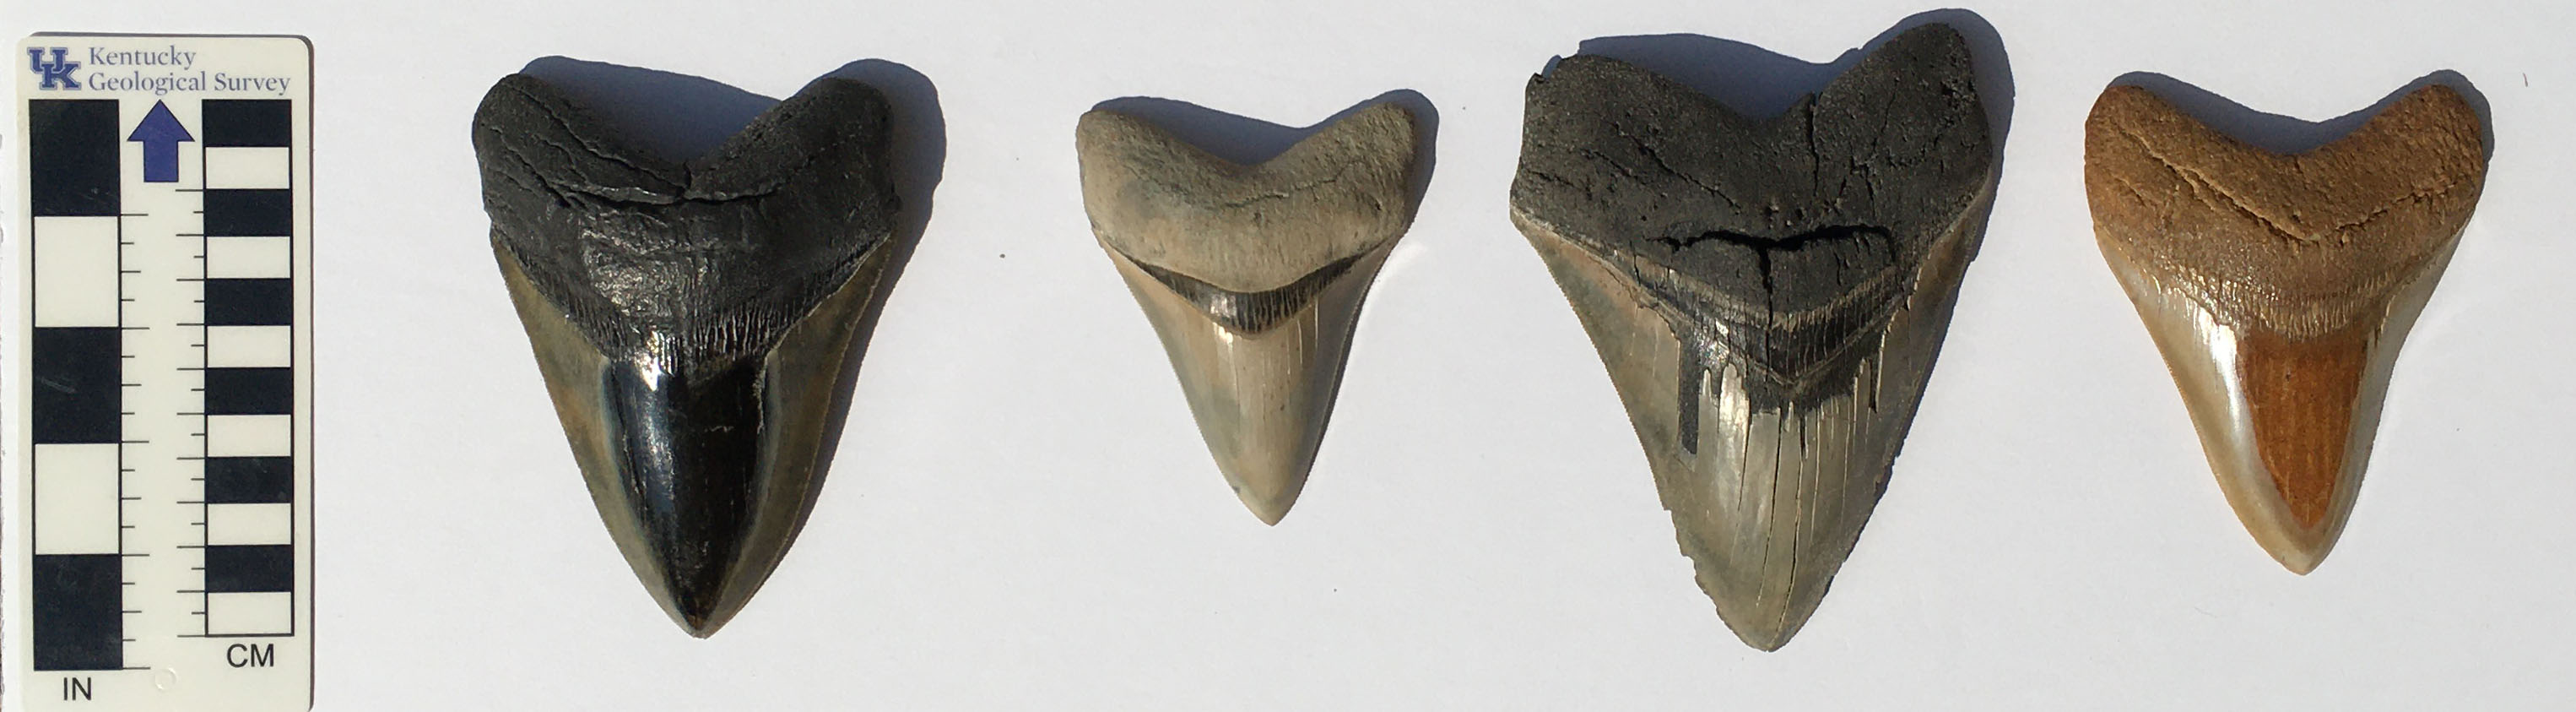 100 fossil shark teeth and 1 Megalodon shark tooth 